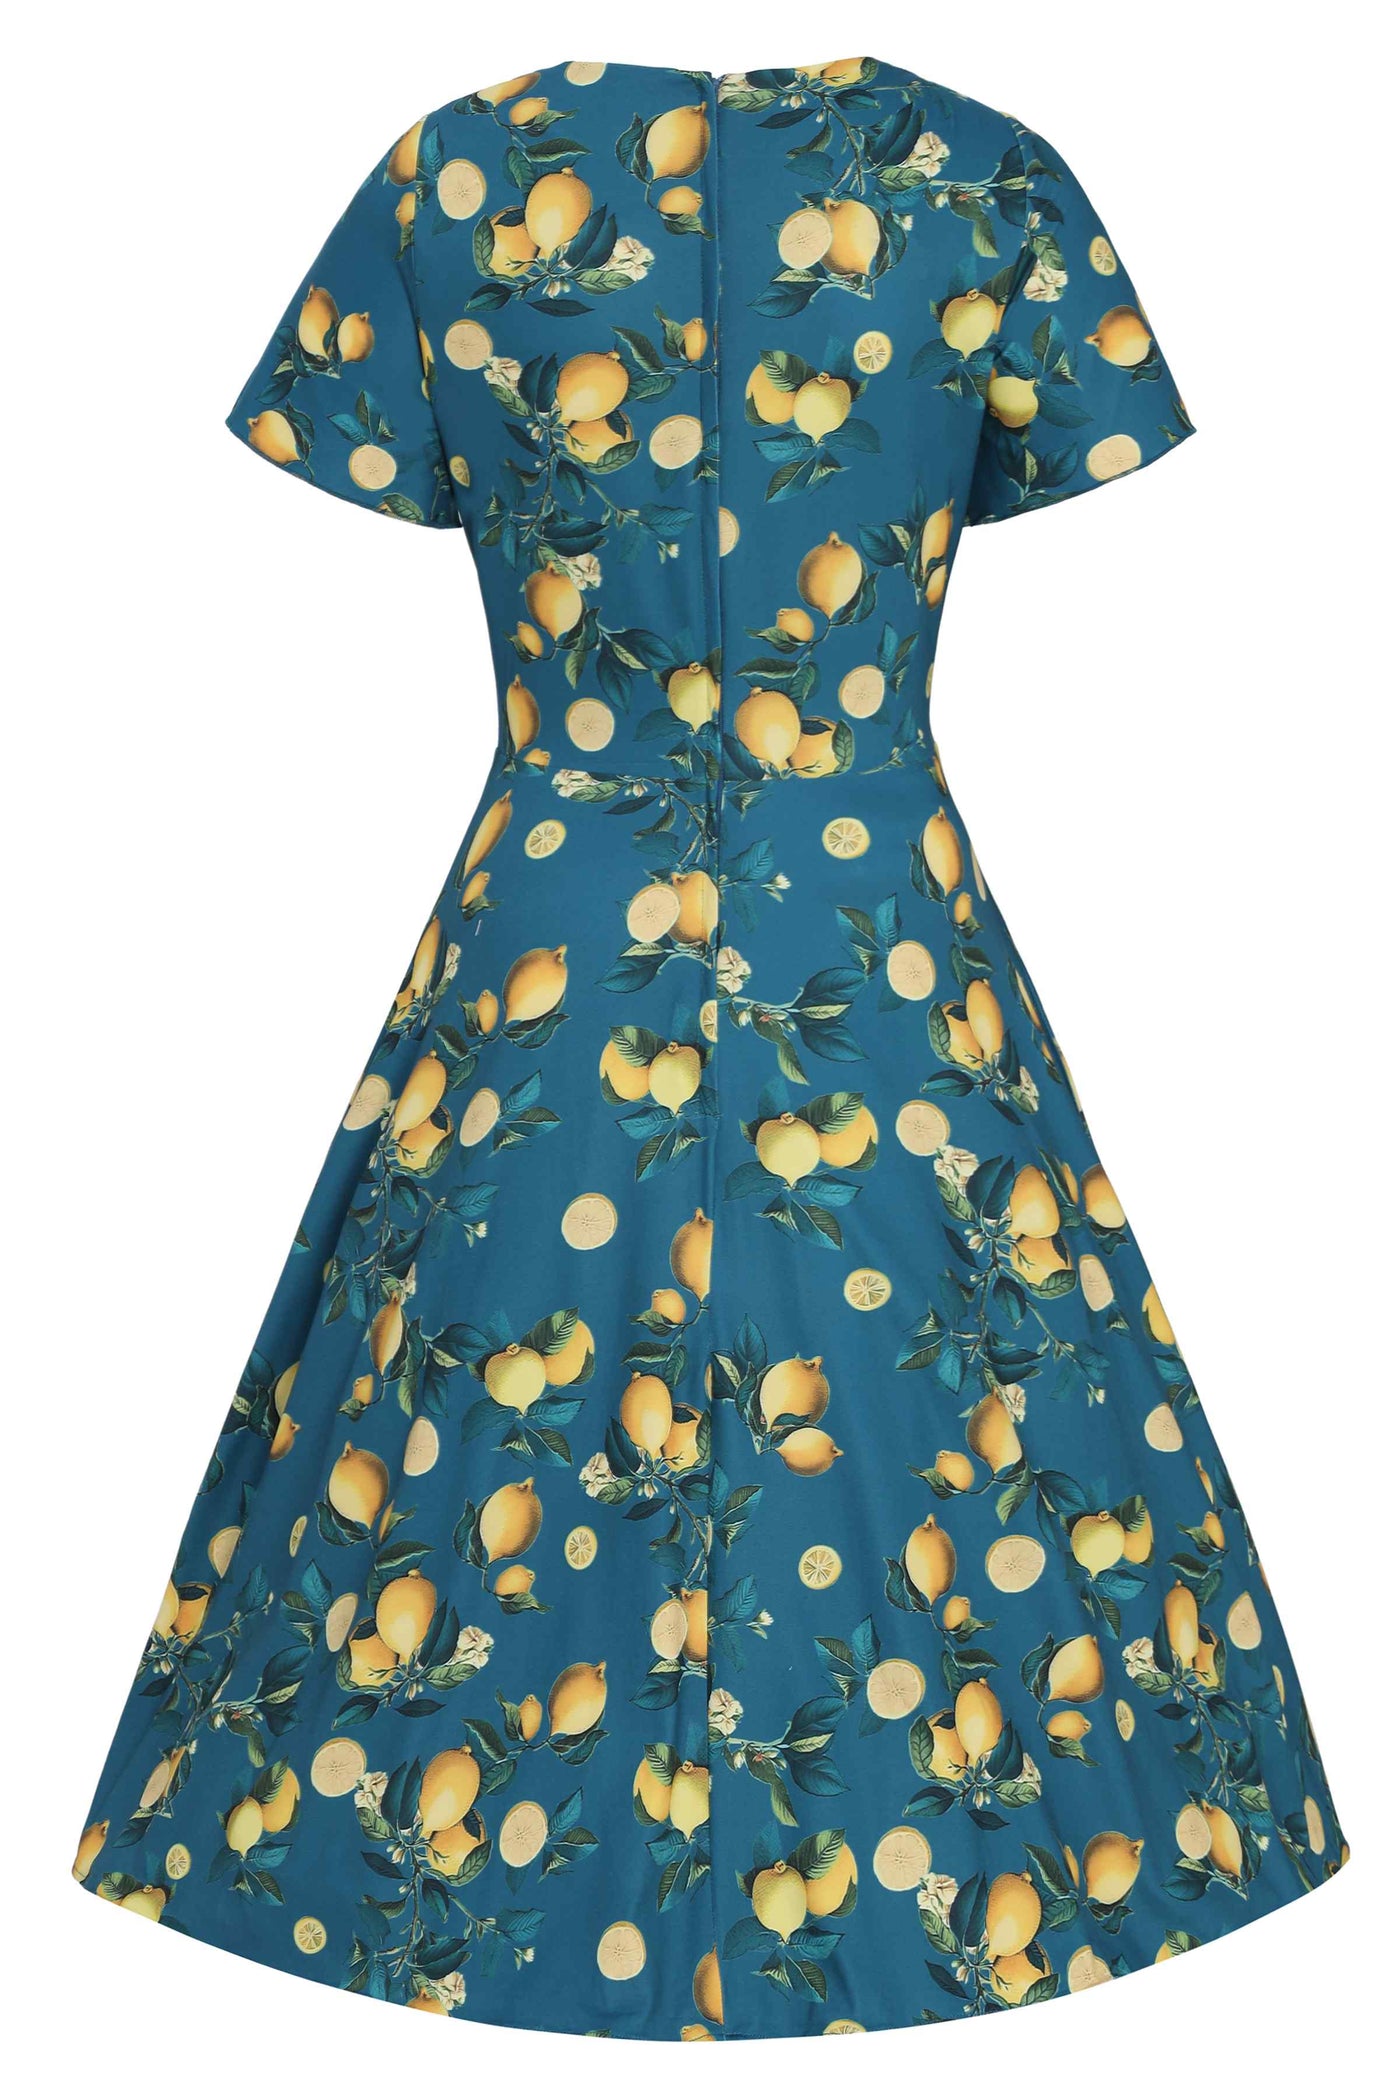 Back View of Lemon Print Short Sleeved Dress in Blue